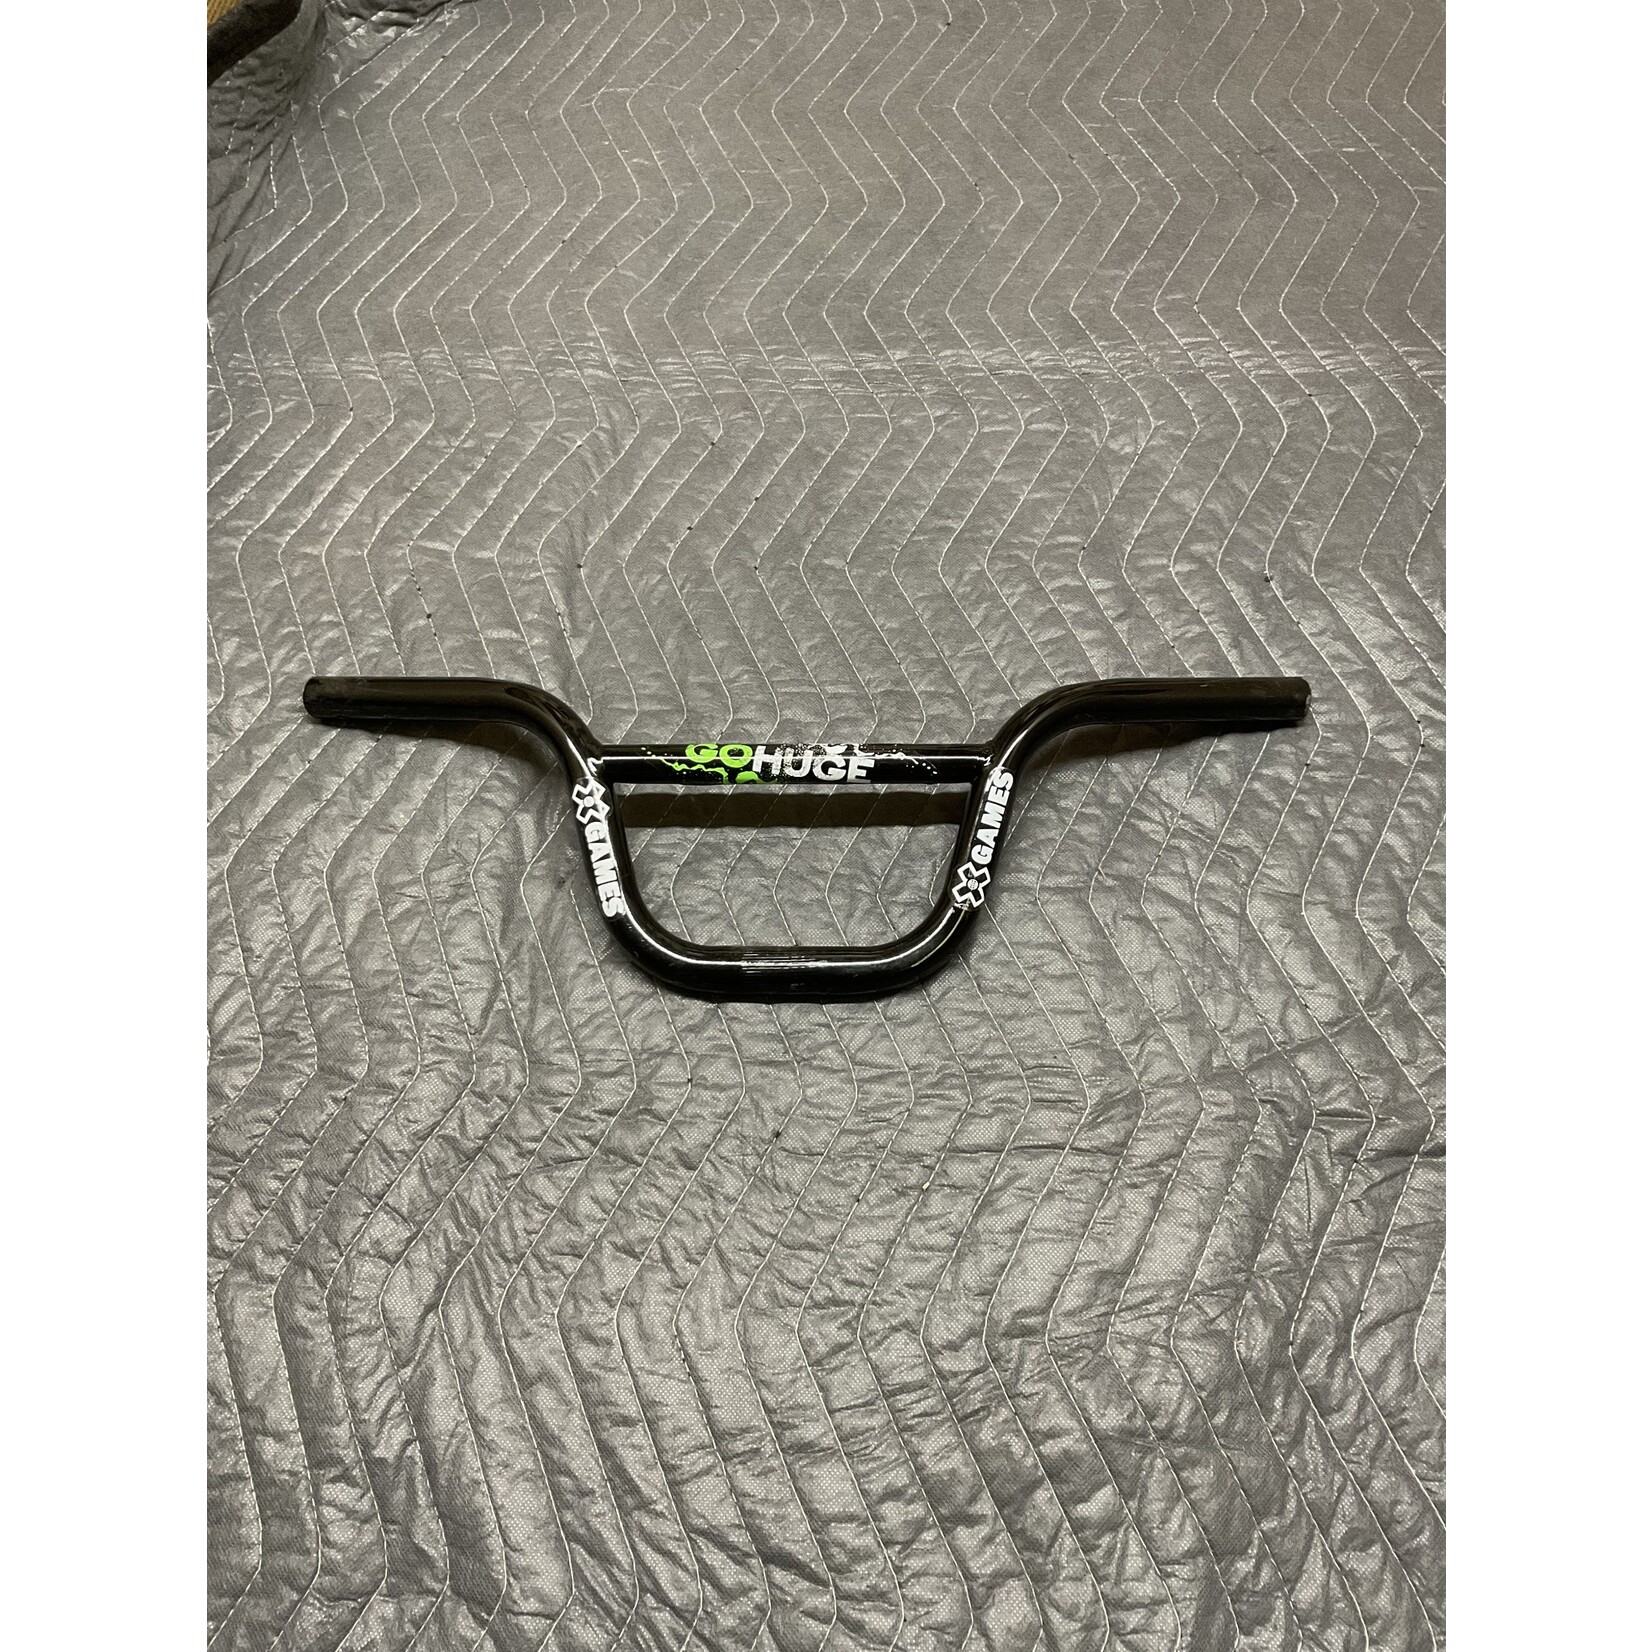 X-Games GoHuge 16” Bicycle Handlebars (Black w/ Green)